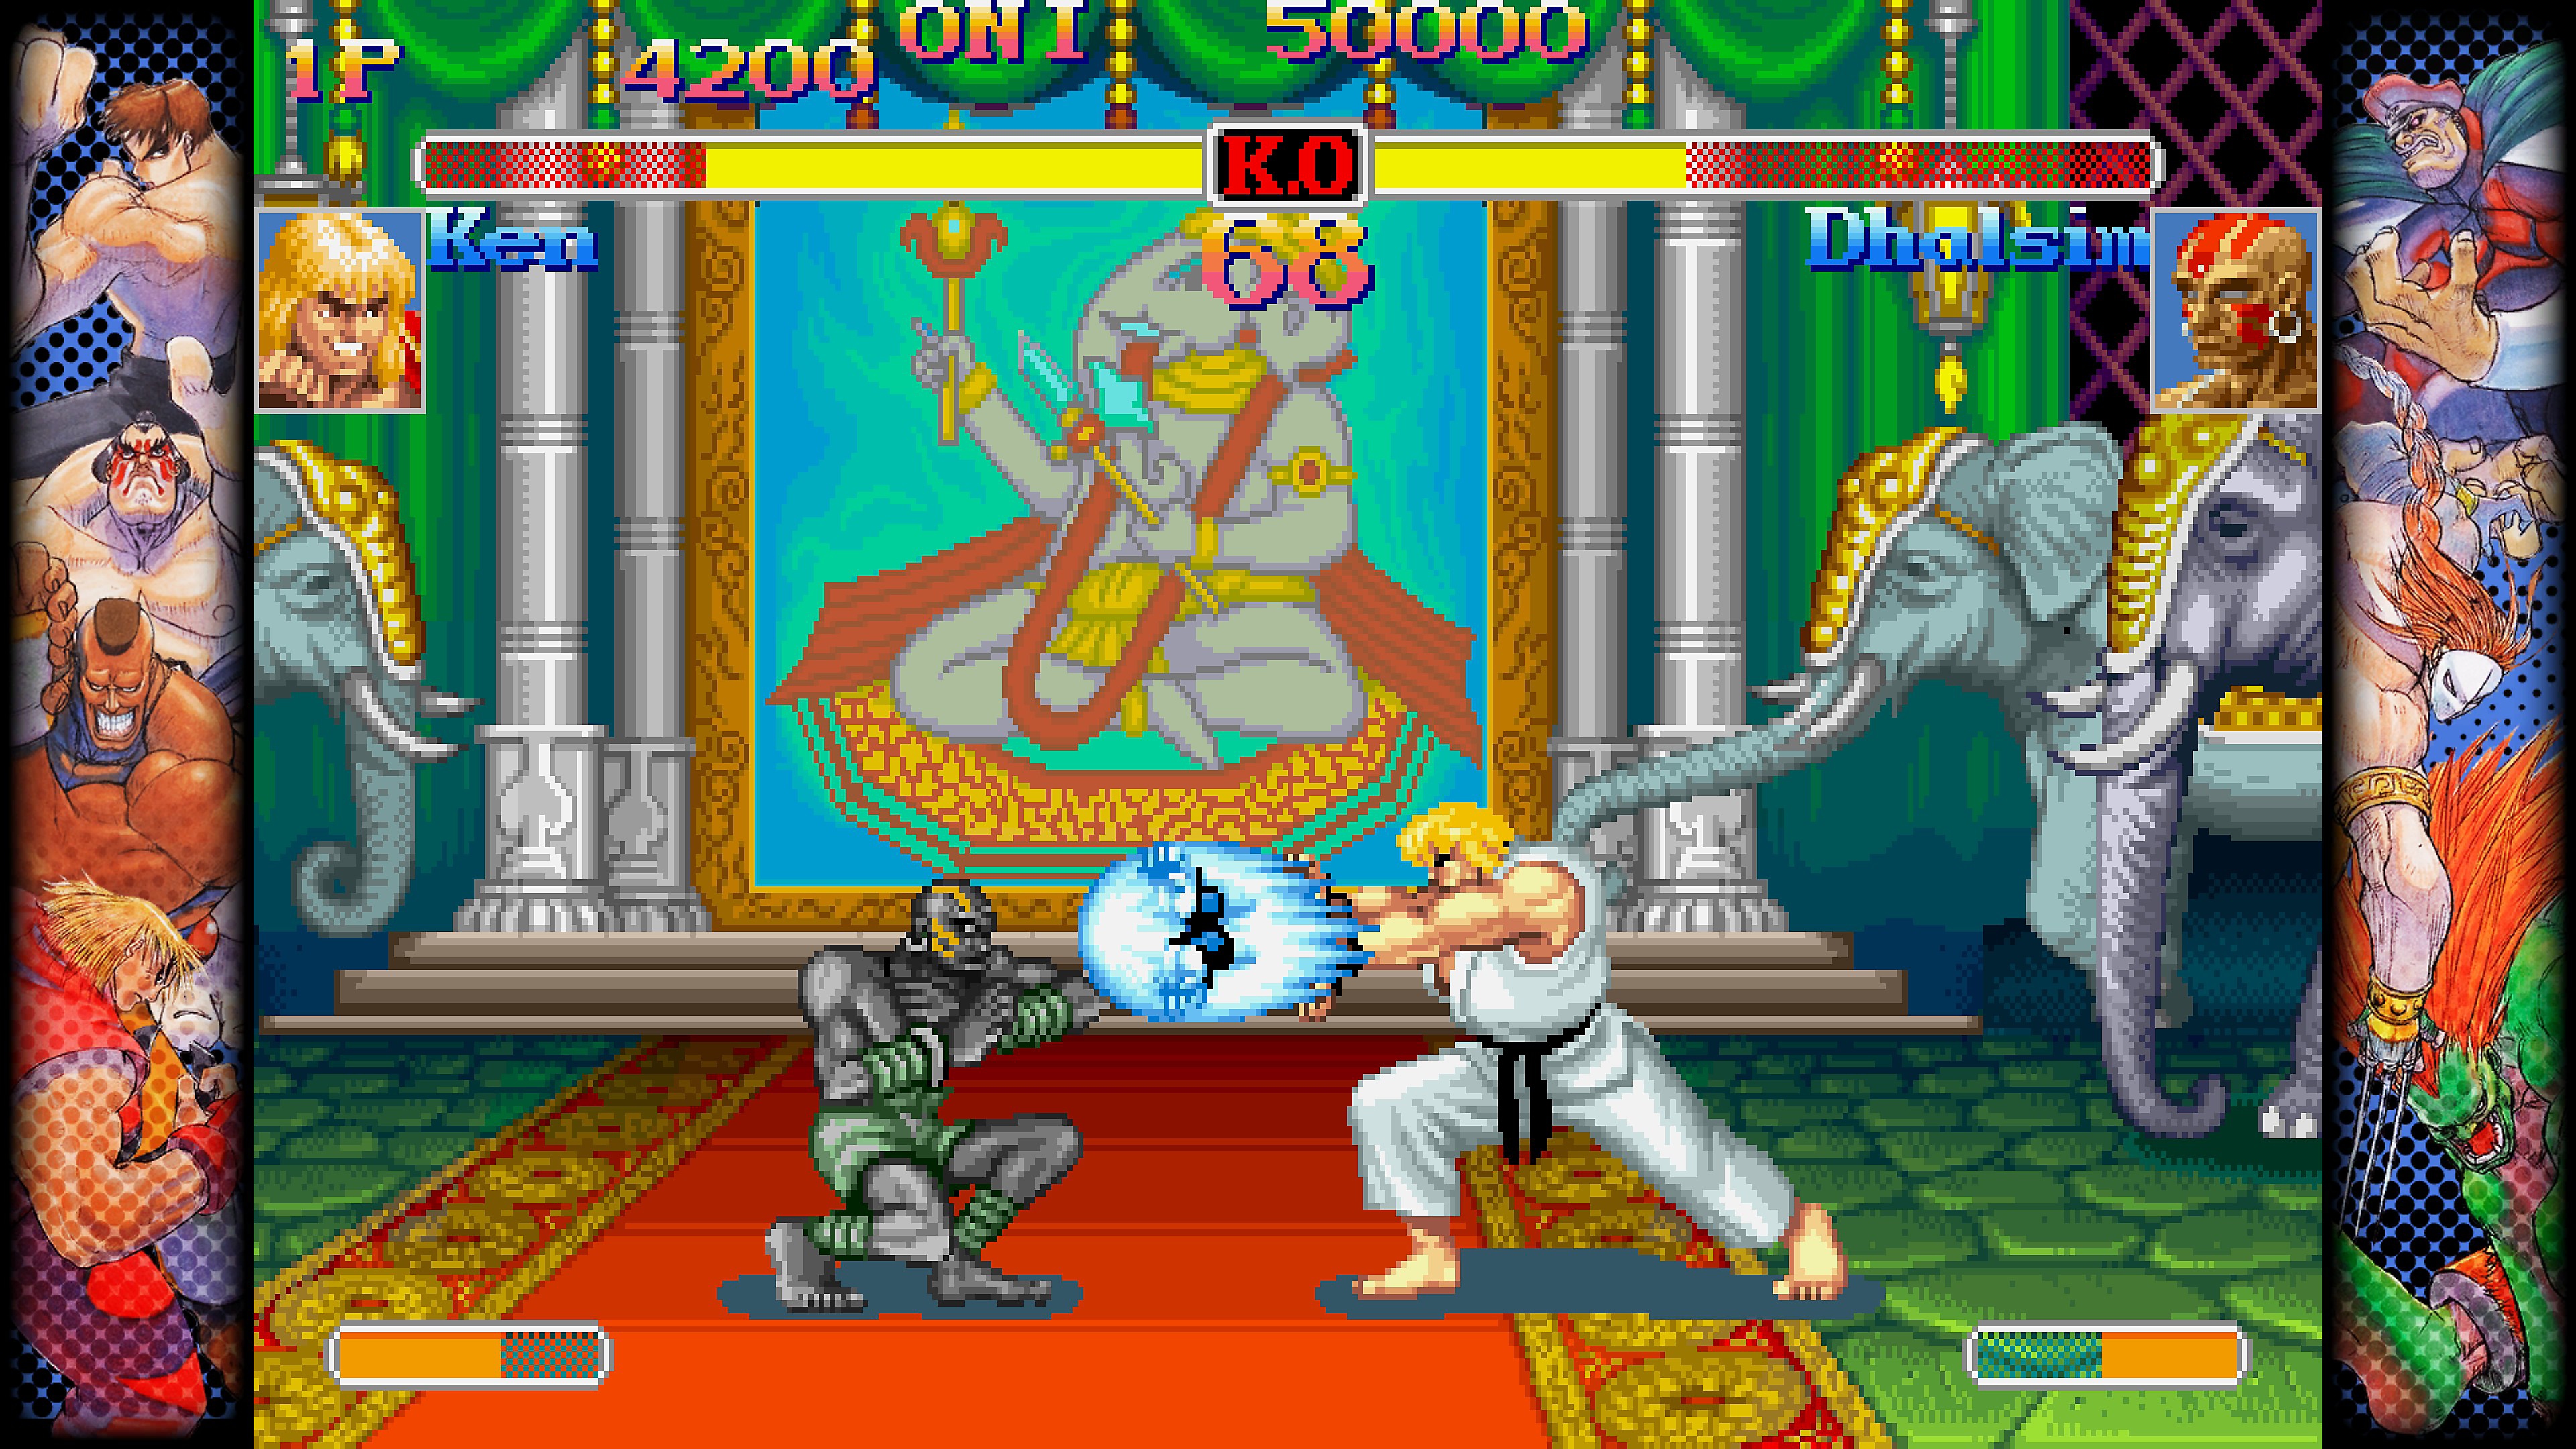 Capcom Fighting Collection – zrzut ekranu przedstawiający walkę pomiędzy dwiema postaciami